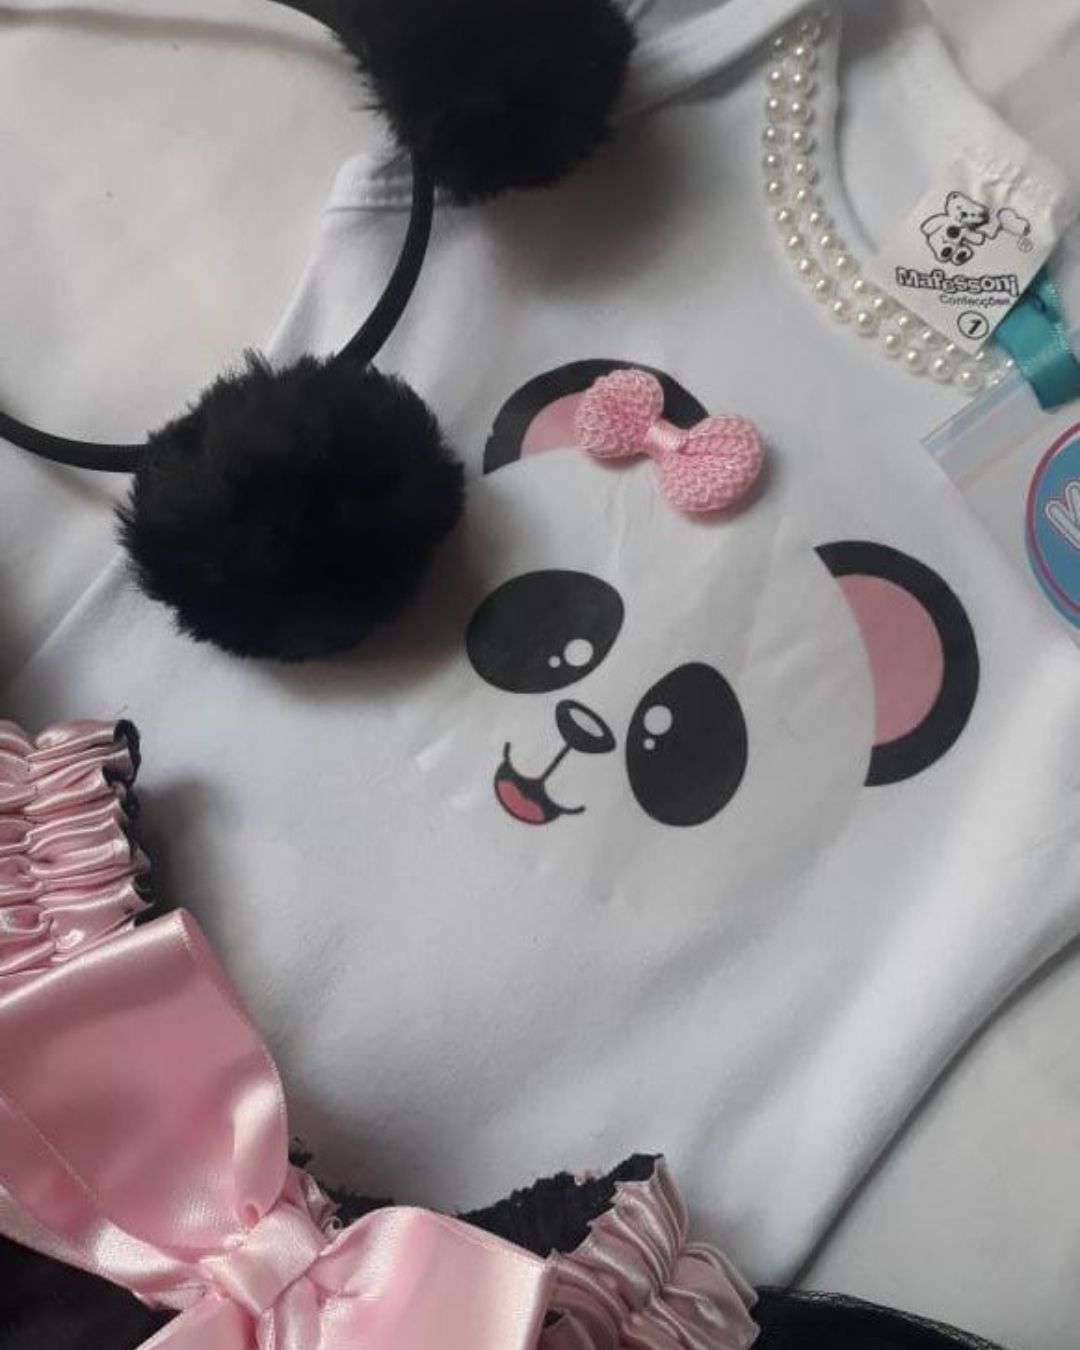 Fantasia panda - saia preta com laço rosa